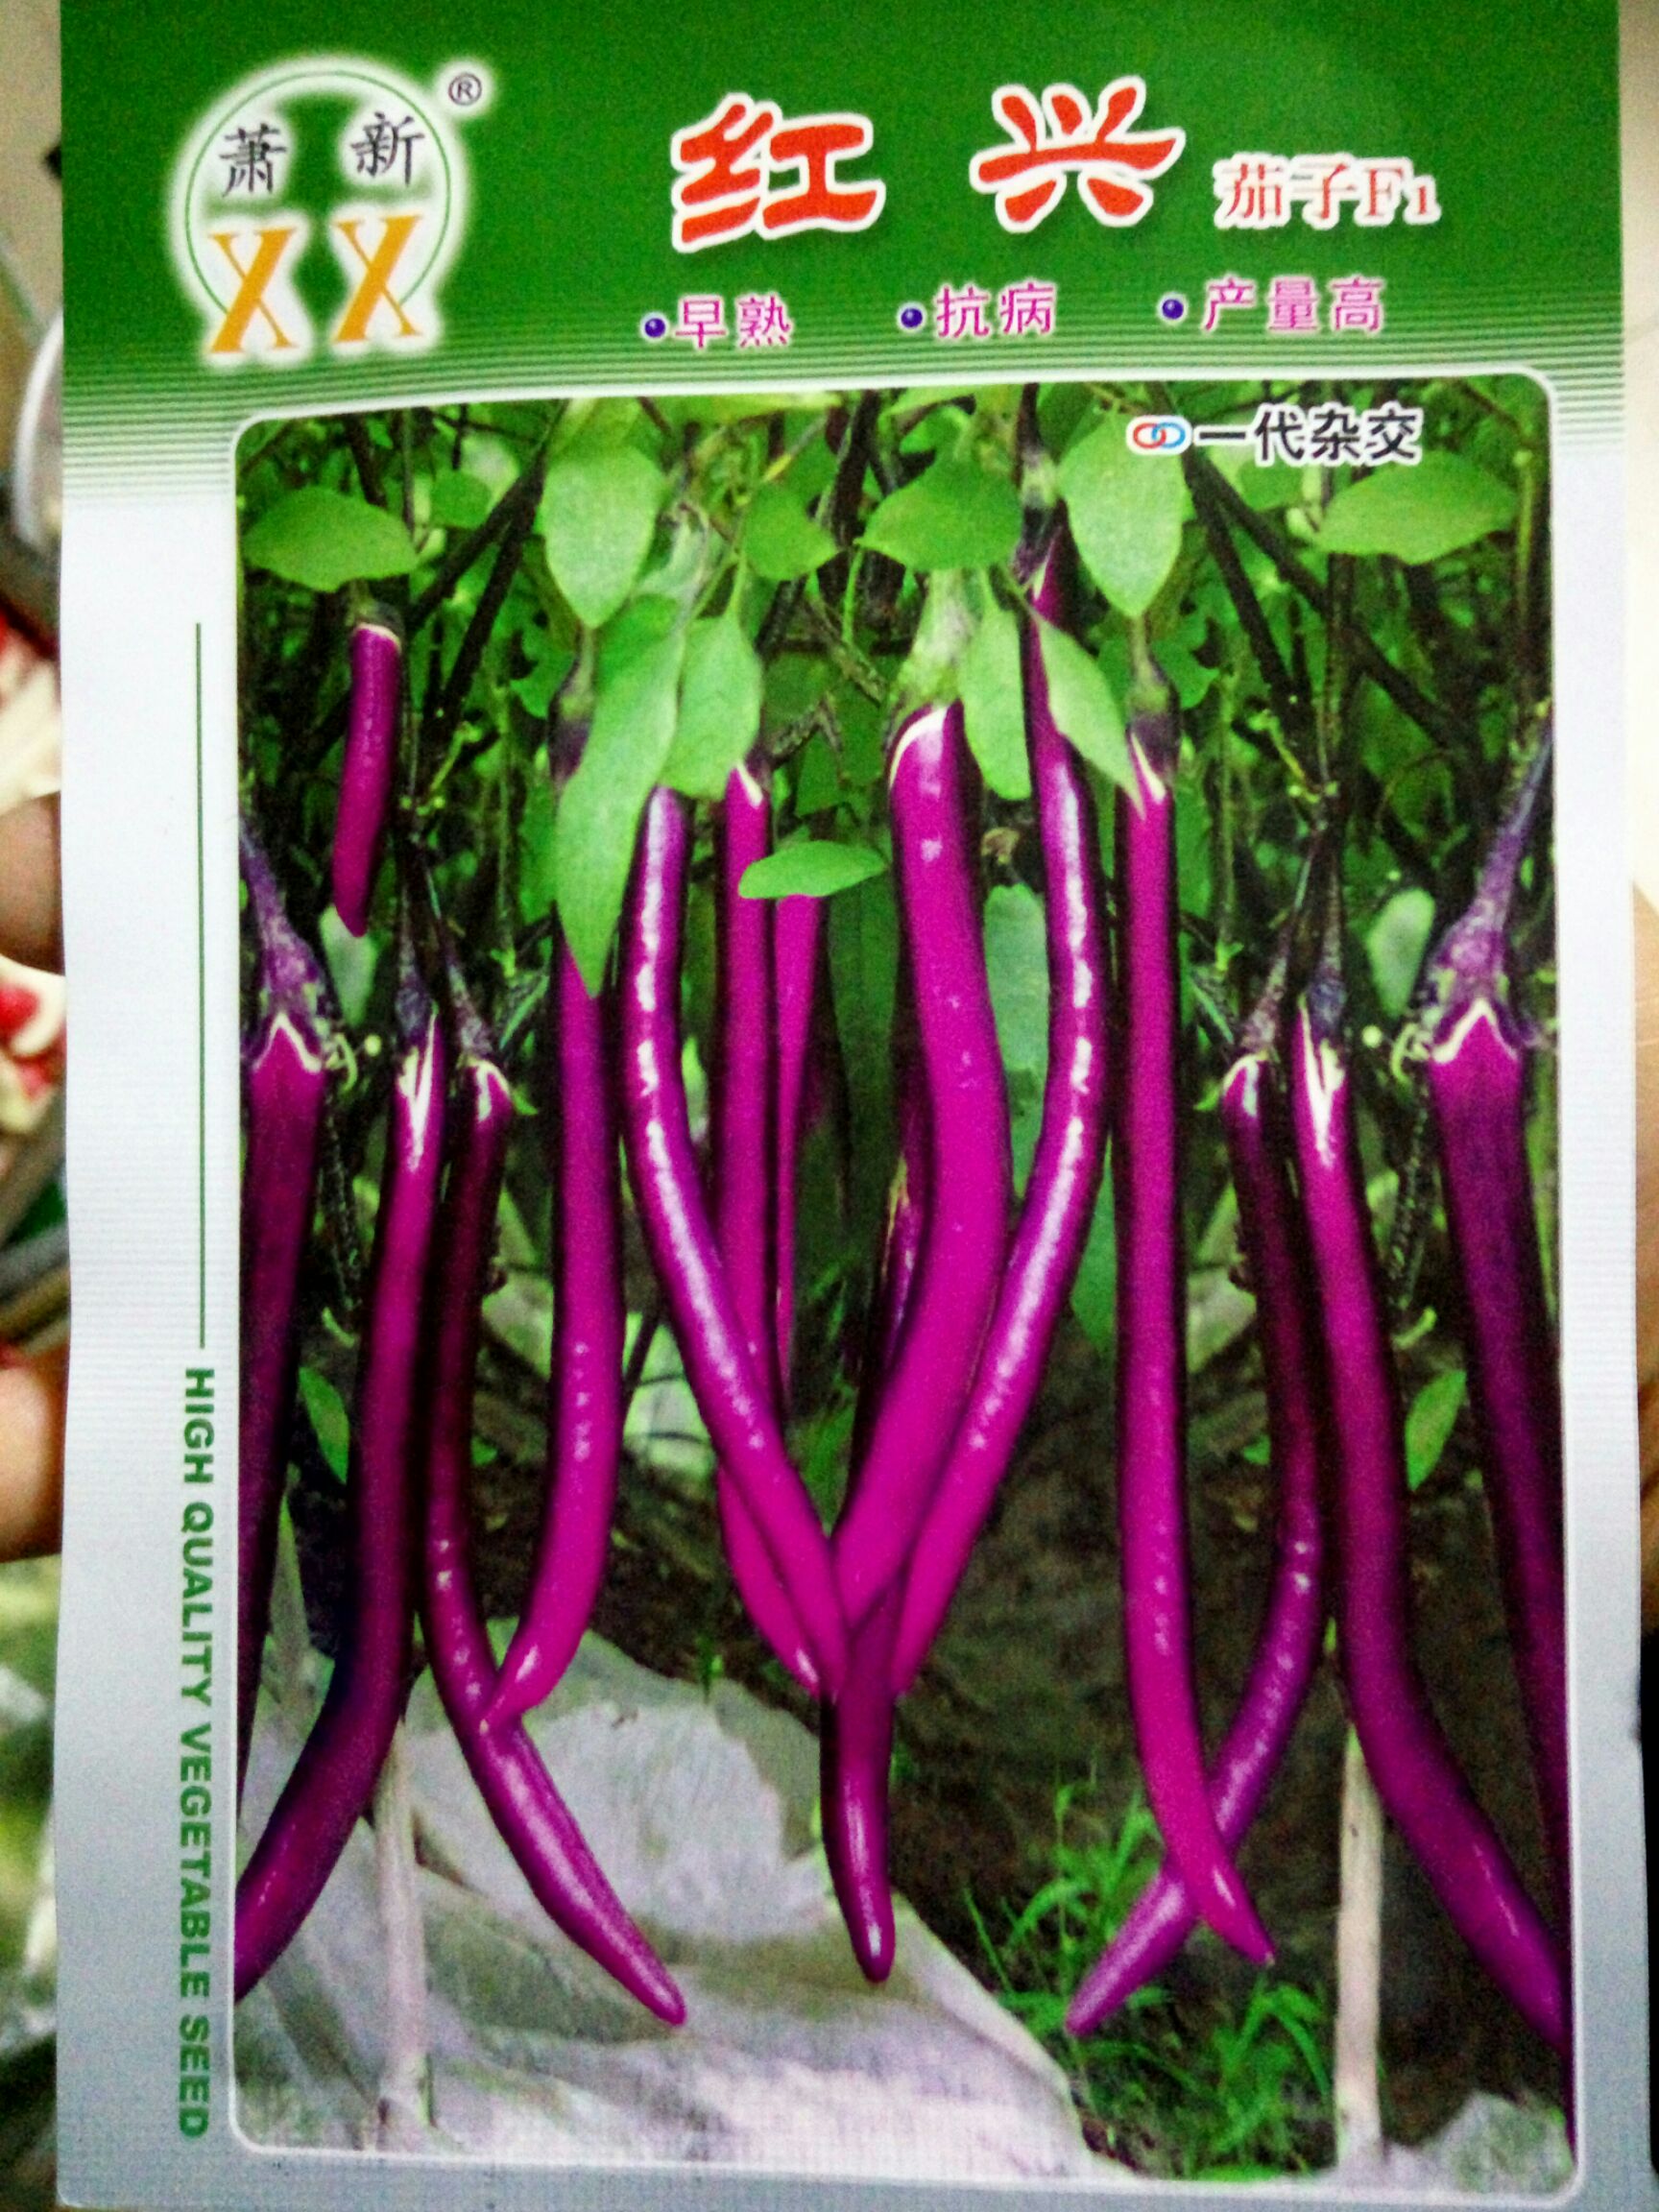 沭阳县茄子种子 杂交种 ≥95% 